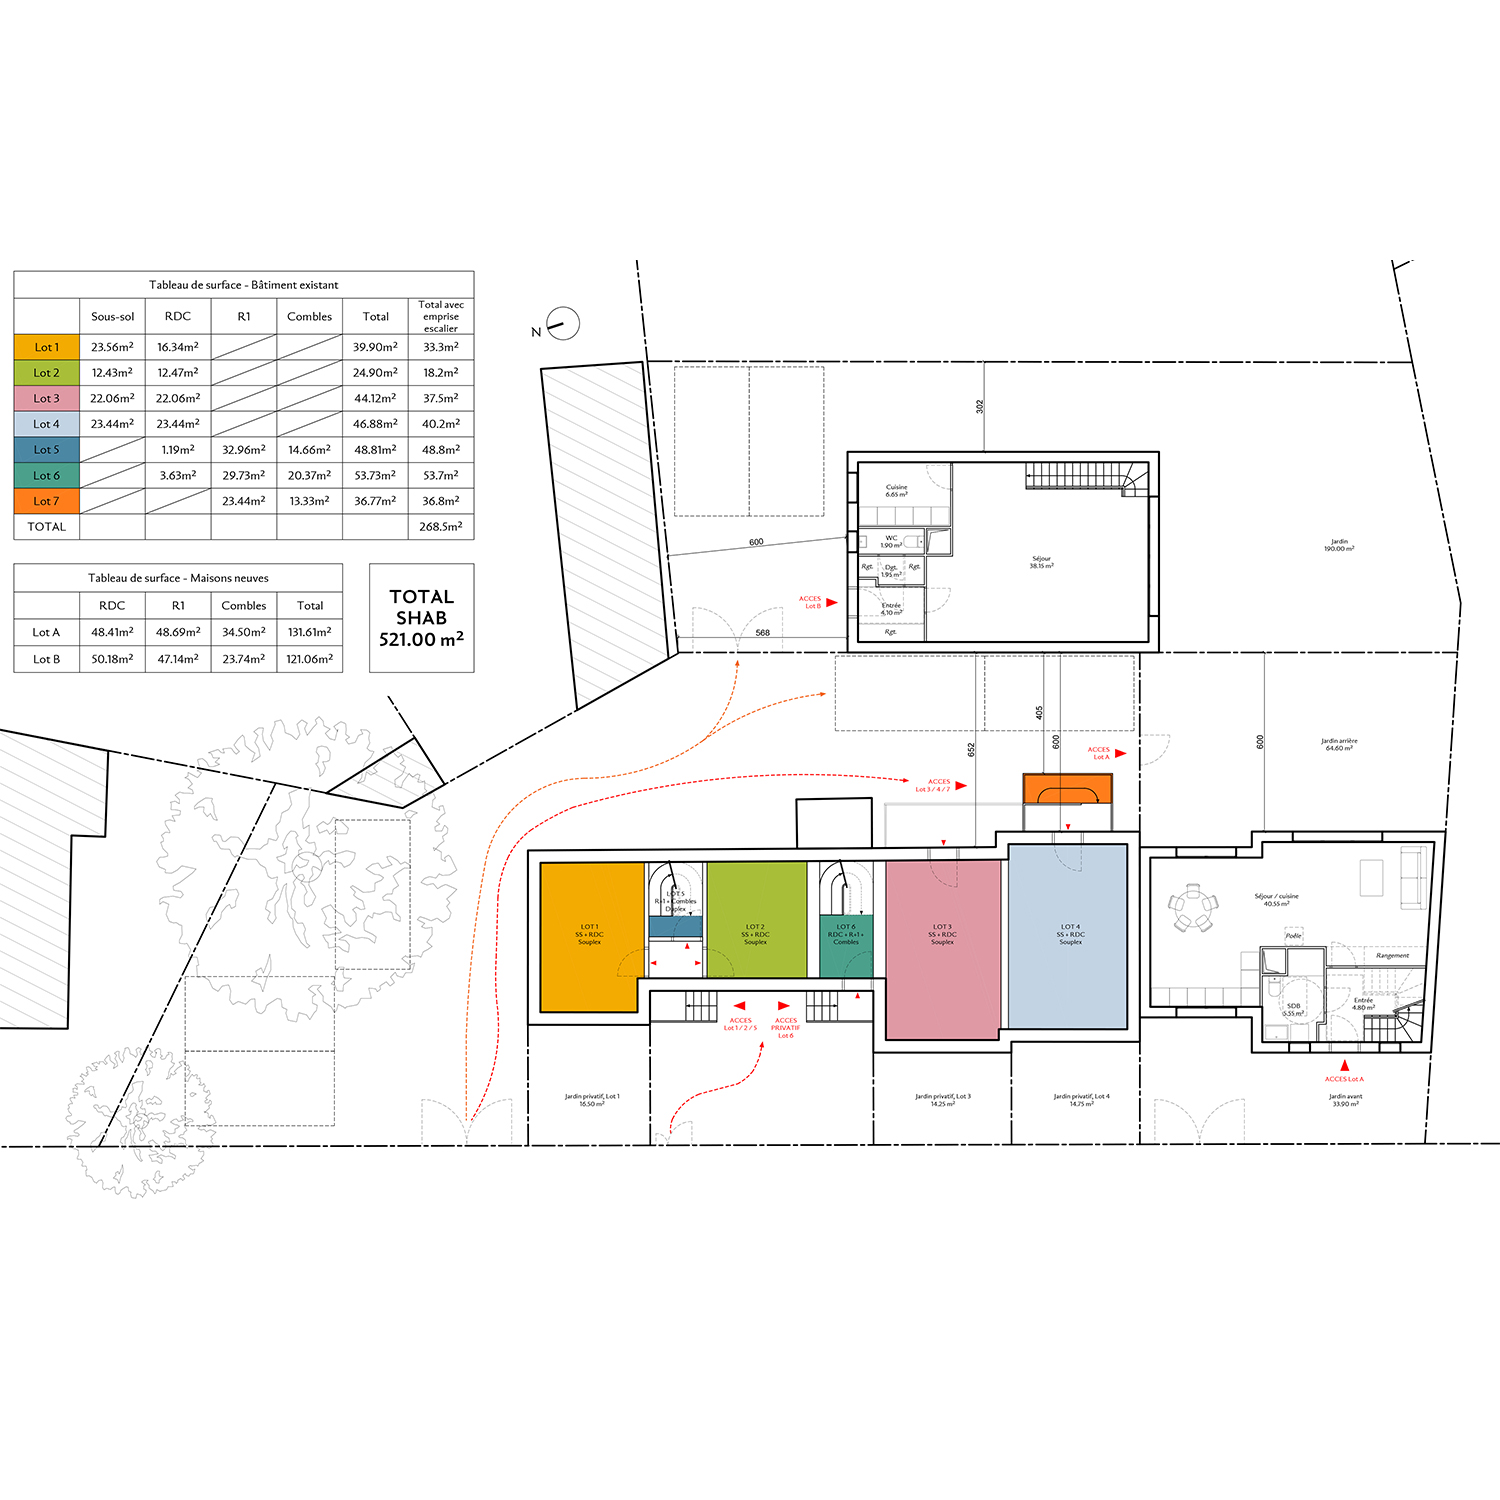 2_Avramova architecte_Bourg-la-Reine_RＩabilitation et crＢtion de logements_Plan RDC